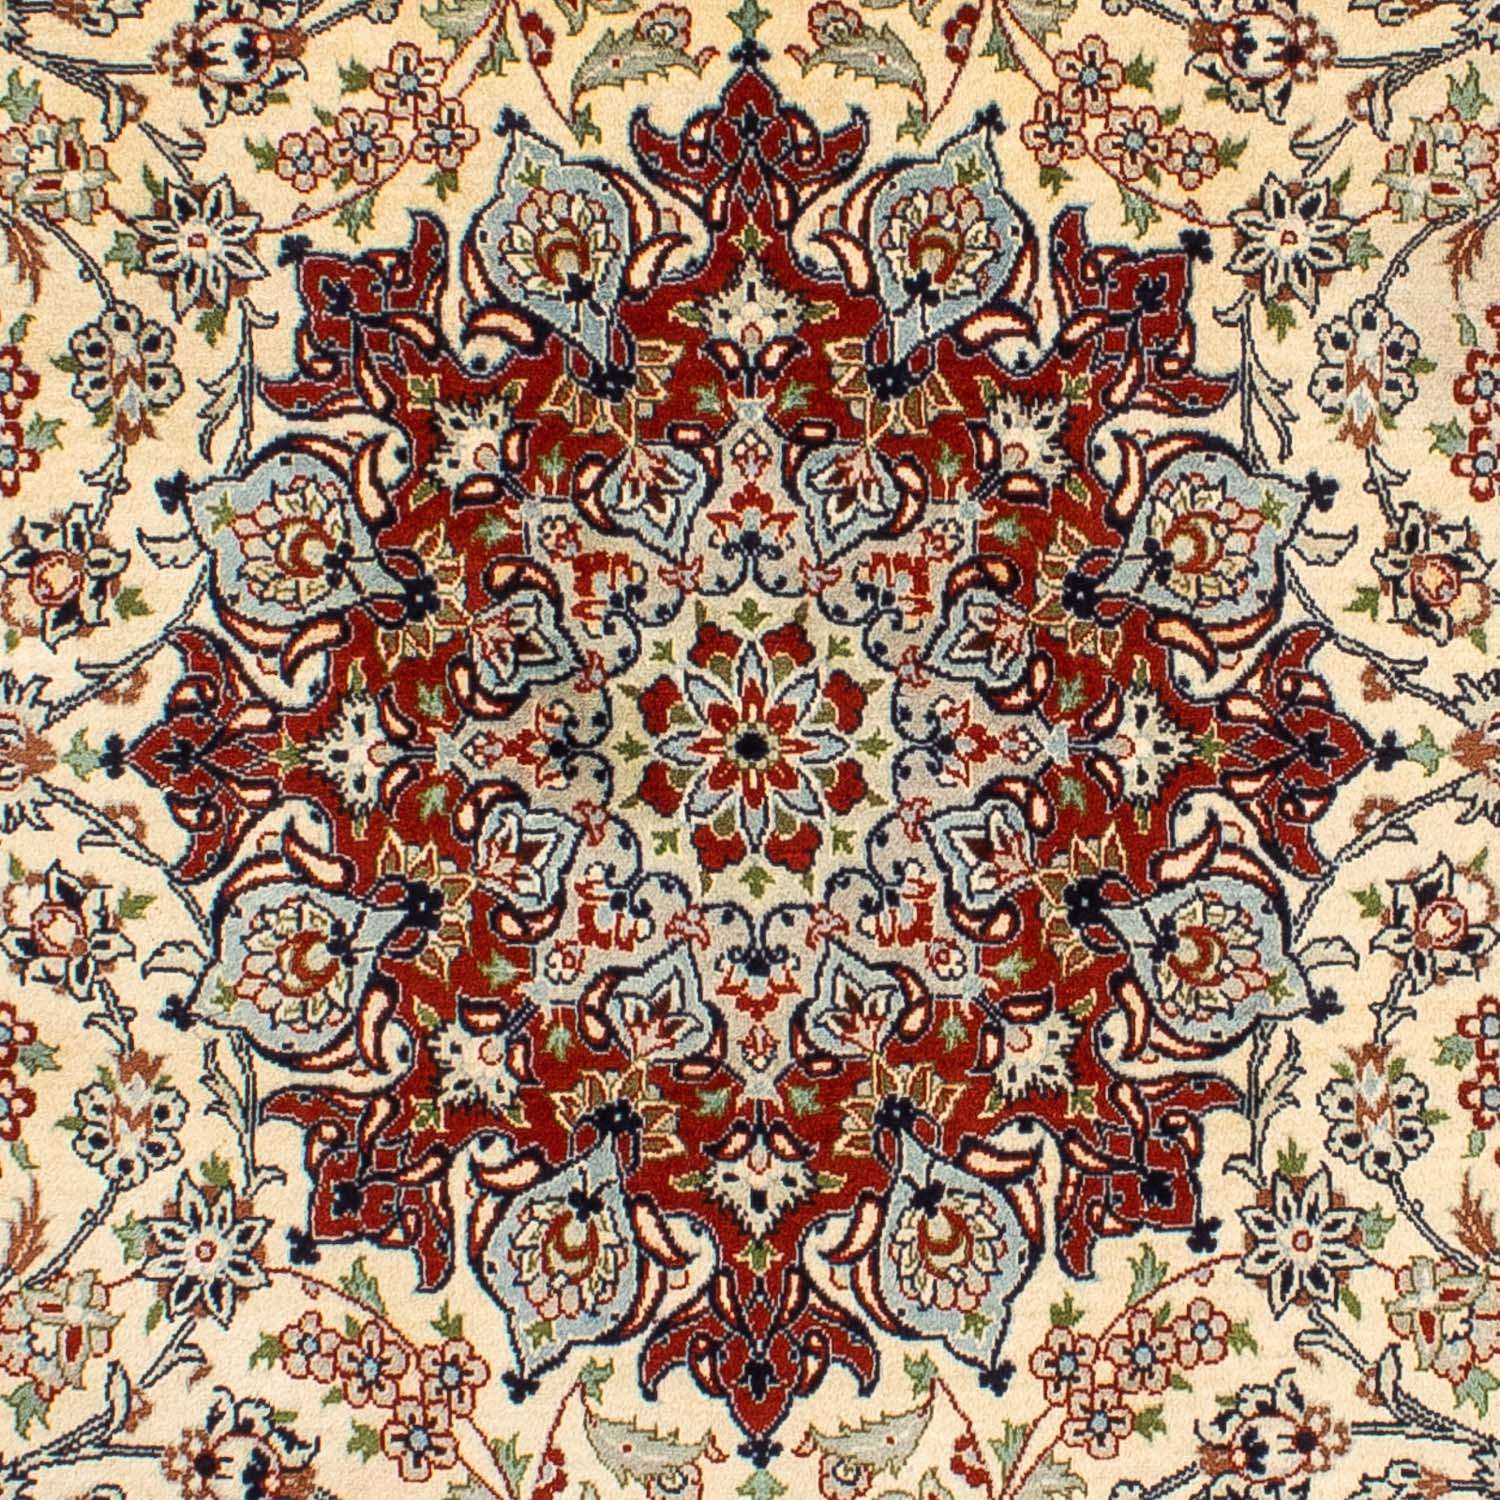 Perzisch tapijt - Klassiek - 316 x 205 cm - beige